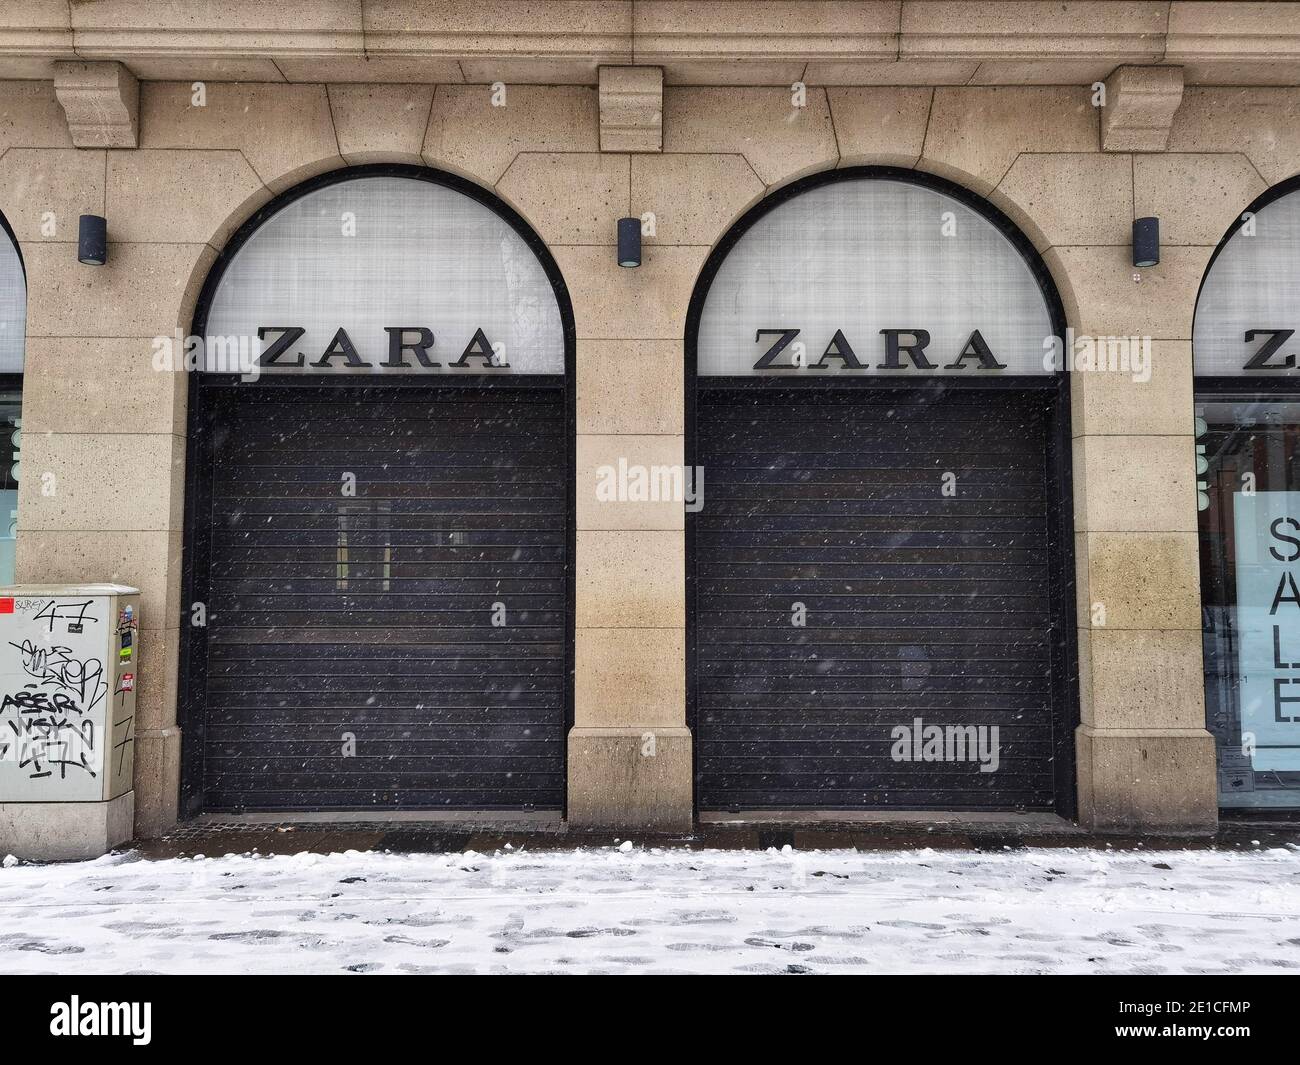 München, Bayern, Deutschland. Januar 2021. Ein Zara-Laden hat für den  Urlaub in München geschlossen. Der Besitzer von Zara Inditex hatte im Juni  angekündigt, 1,000-2,000 Filialen weltweit zu schließen. Quelle: Sachelle  Babbar/ZUMA Wire/Alamy